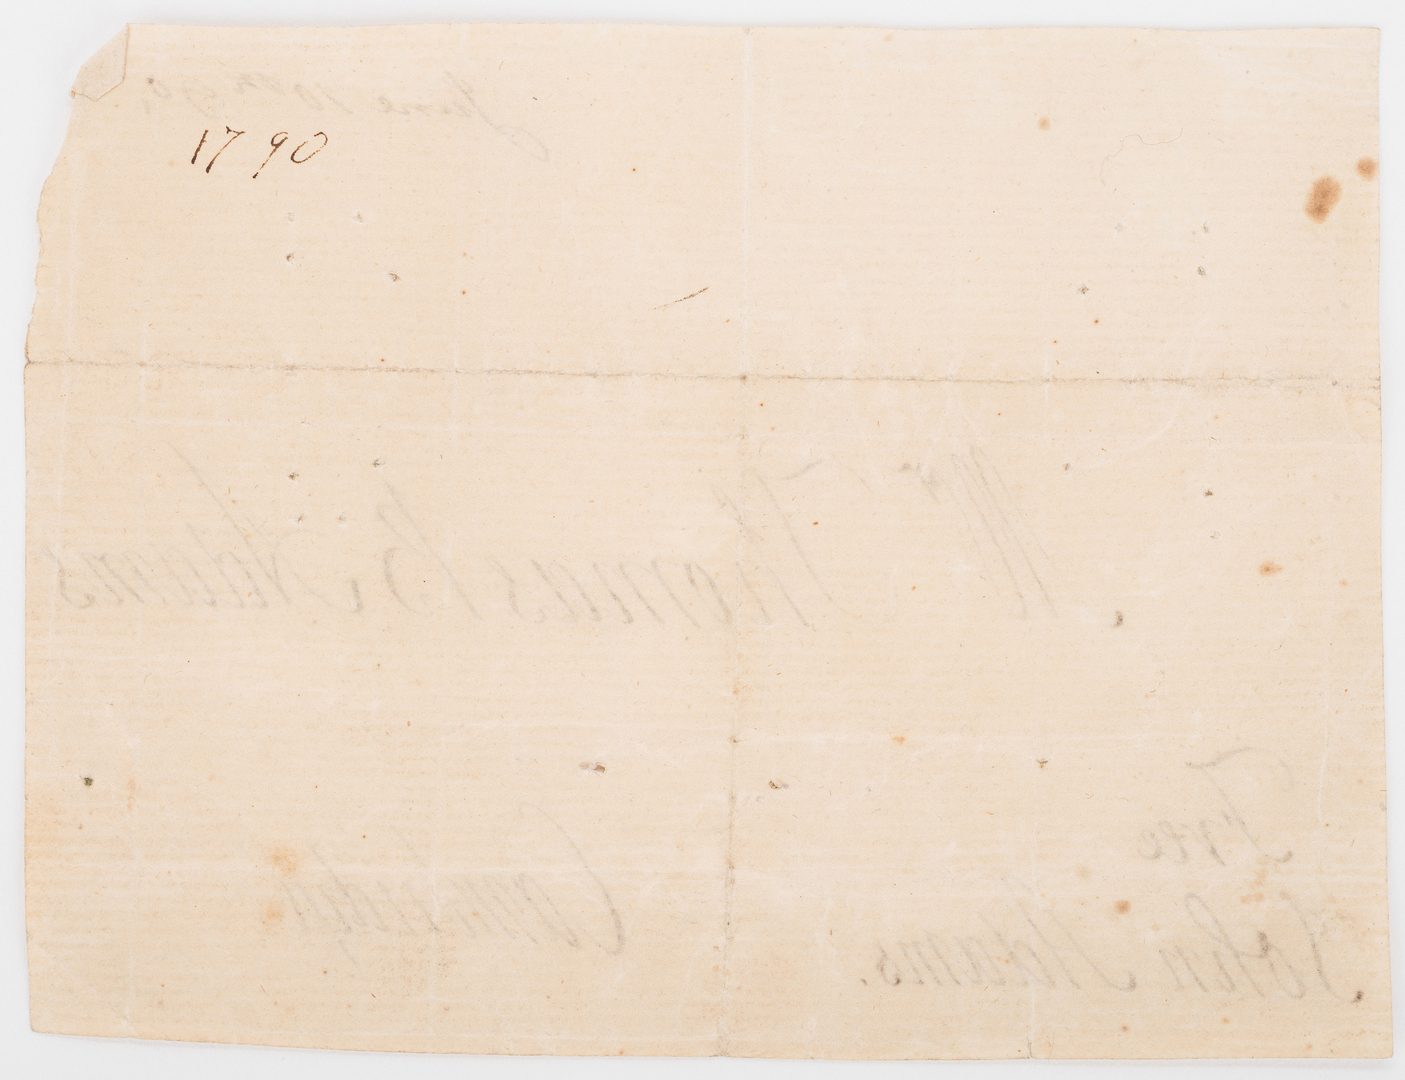 Lot 249: John Adams Signed Free Franked Envelope & Portrait Litho